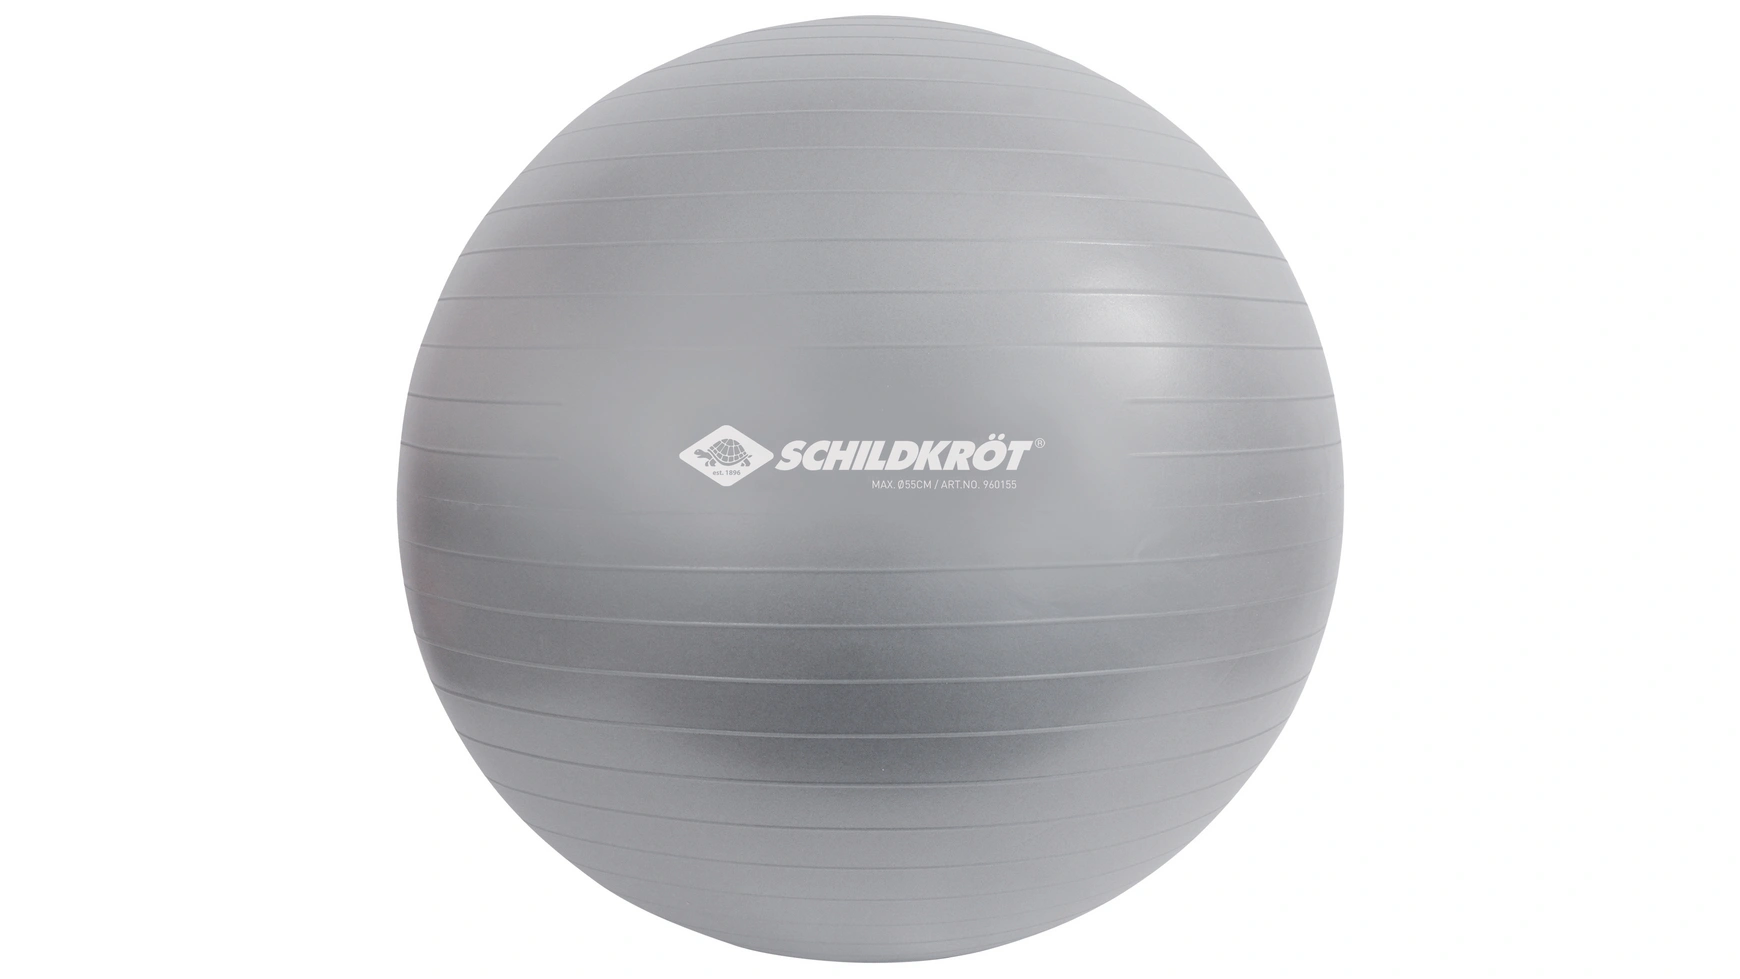 Schildkröt Fitness Мяч для упражнений 55 см, без фталатов, с шариковым насосом, серебро высококачественная пенополиуретановая базовая веревка для тенниса тренировочное оборудование для начинающих тренировочное оборудовани